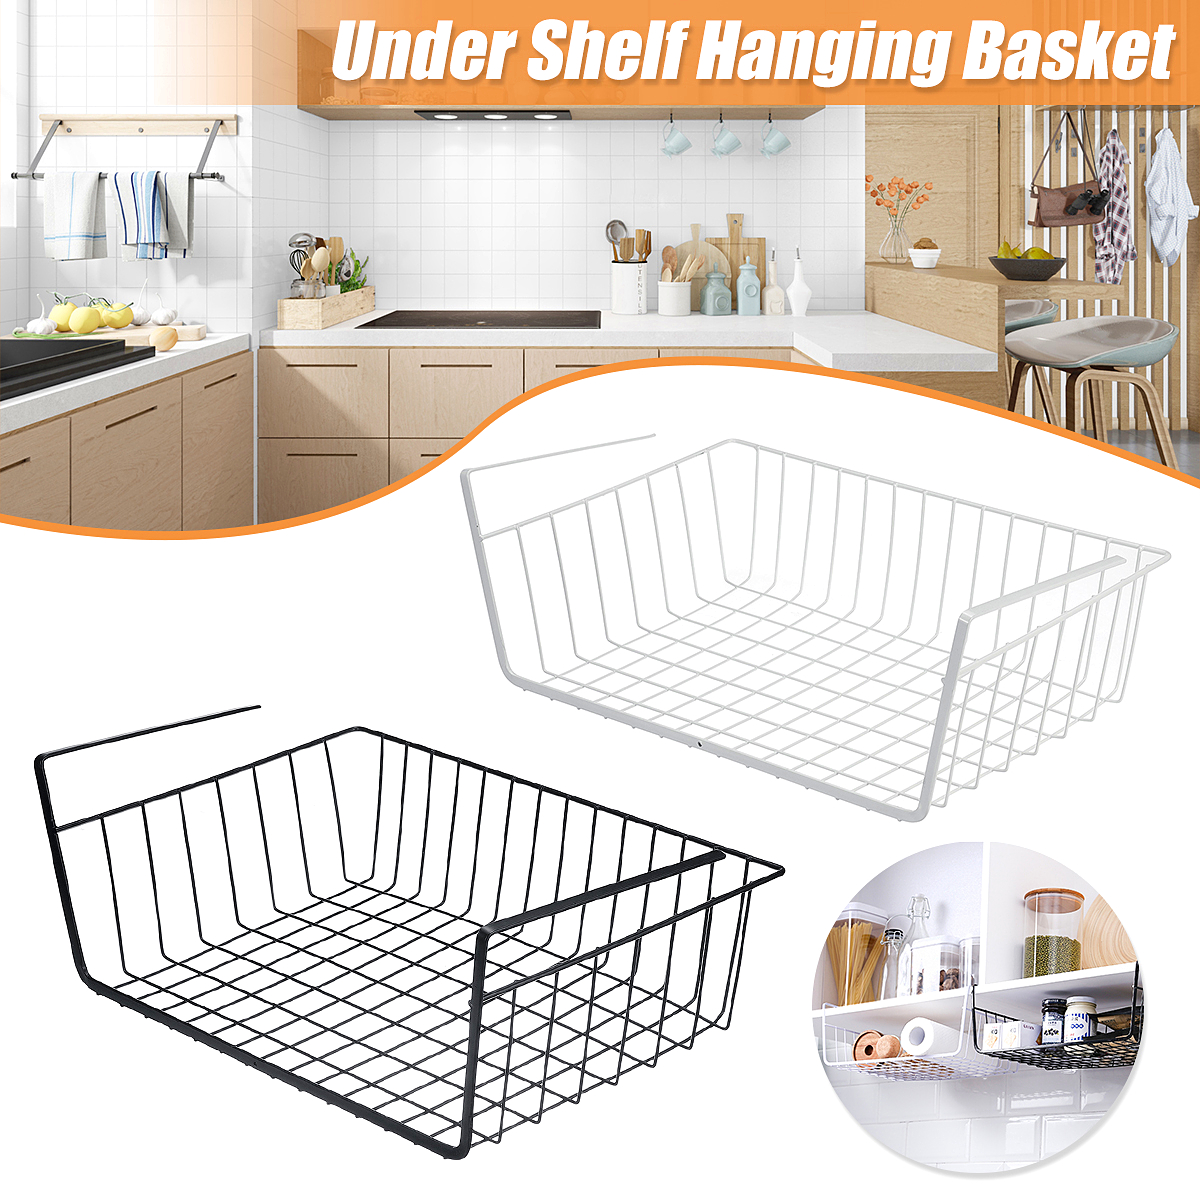 Under-Shelf-Storage-Hanging-Rack-Kitchen-Holder-Basket-Table-Cabinet-Organizer-1703470-1